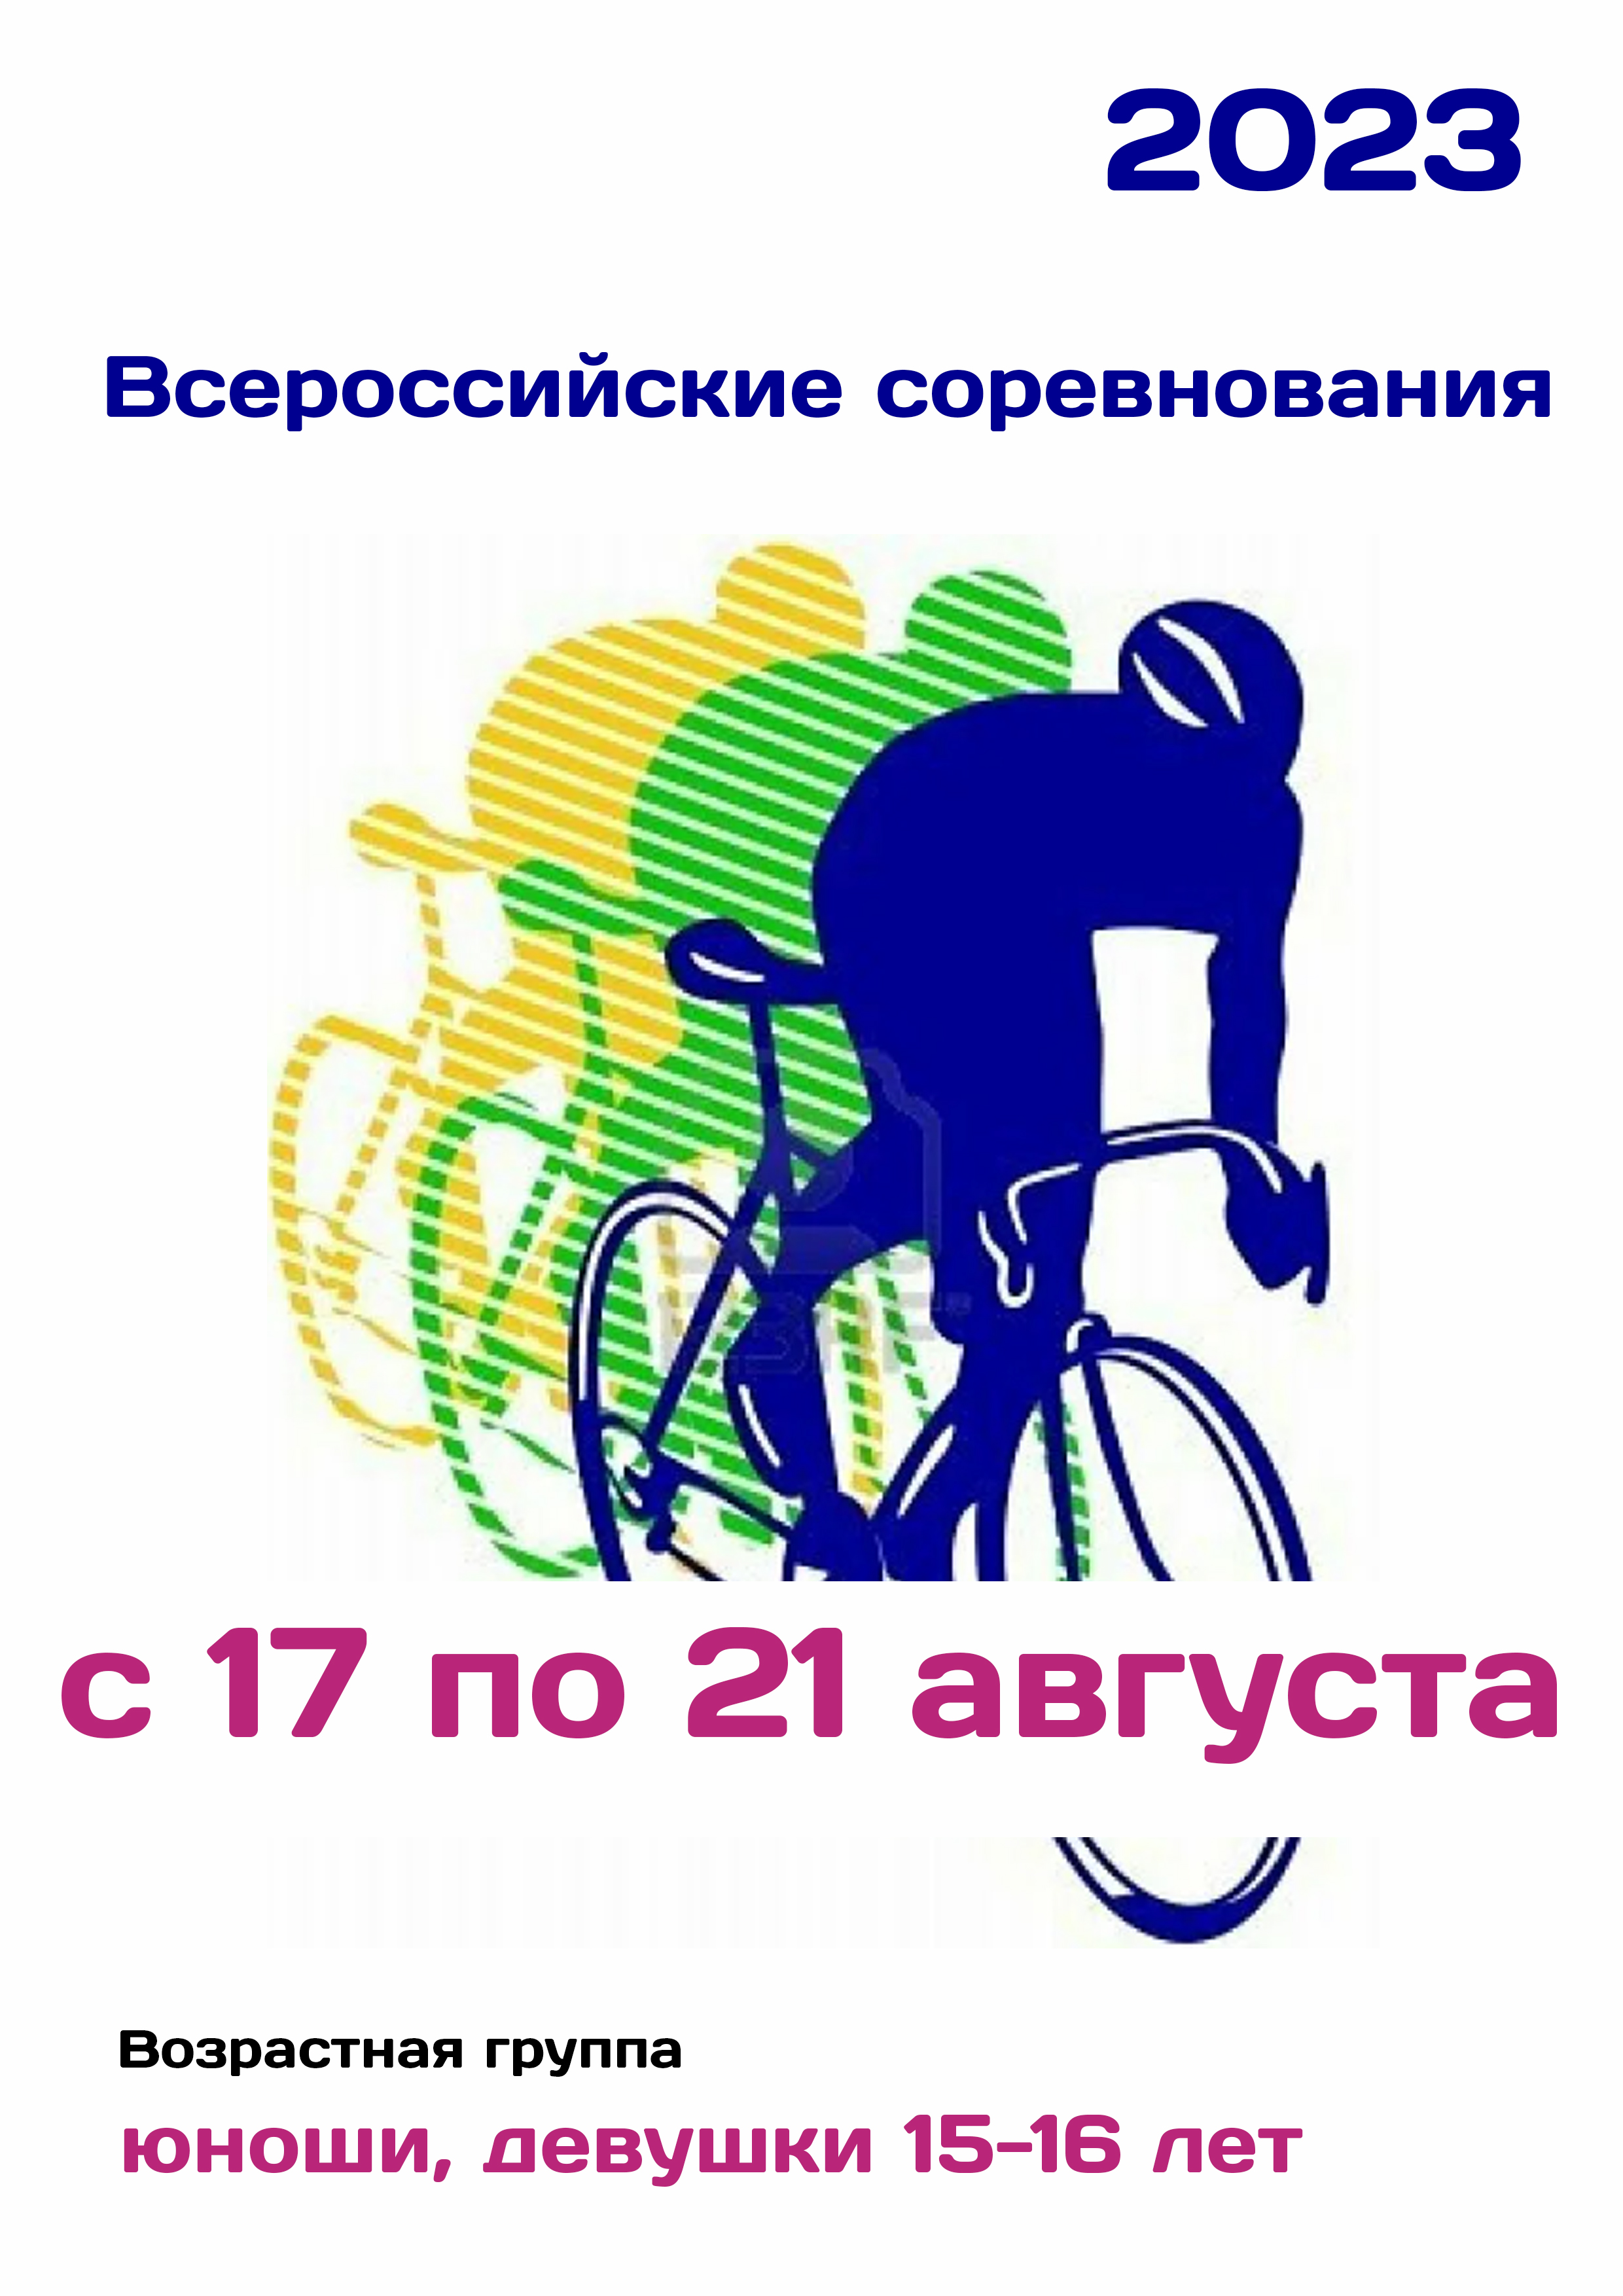 Всероссийские соревнования по велоспорту 17  ágúst
 2023  ári
 